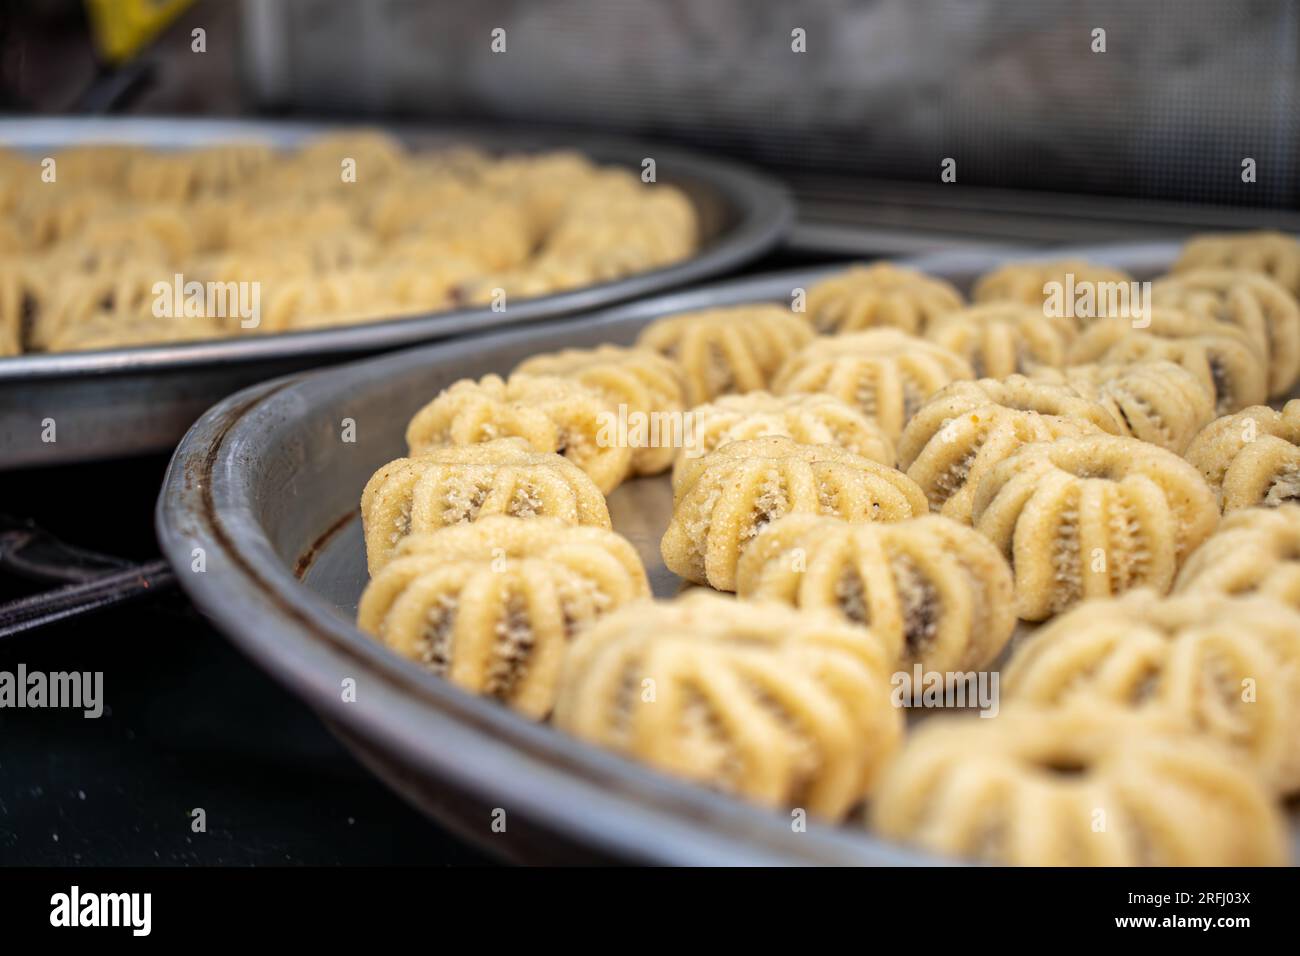 Processus de fabrication de biscuits arabes et de kahk pour l'eid islamique après le ramadan Banque D'Images